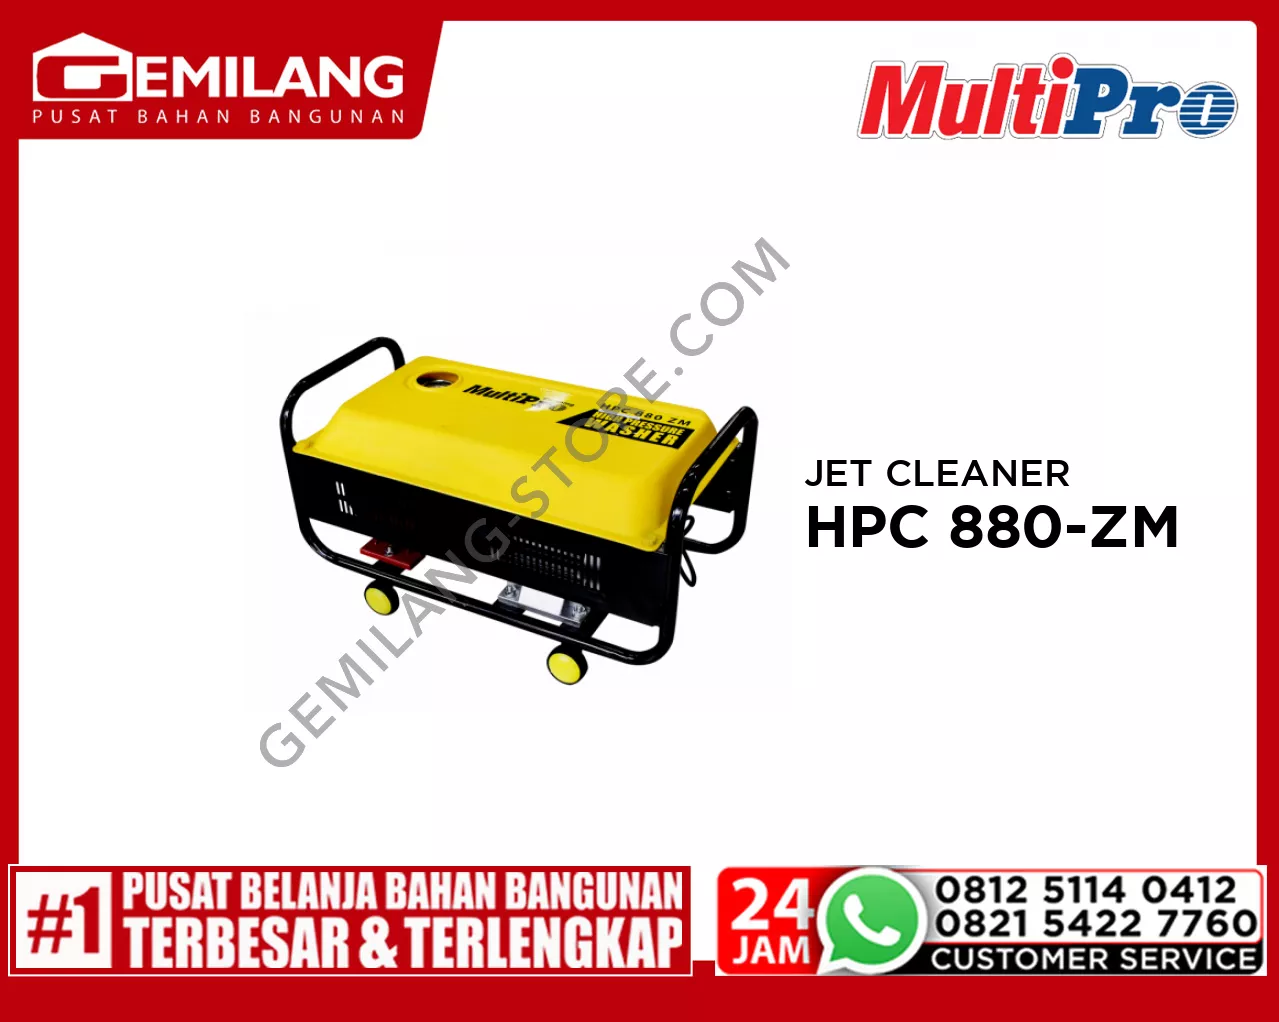 MULTIPRO JET CLEANER HPW/HPC 880-ZM